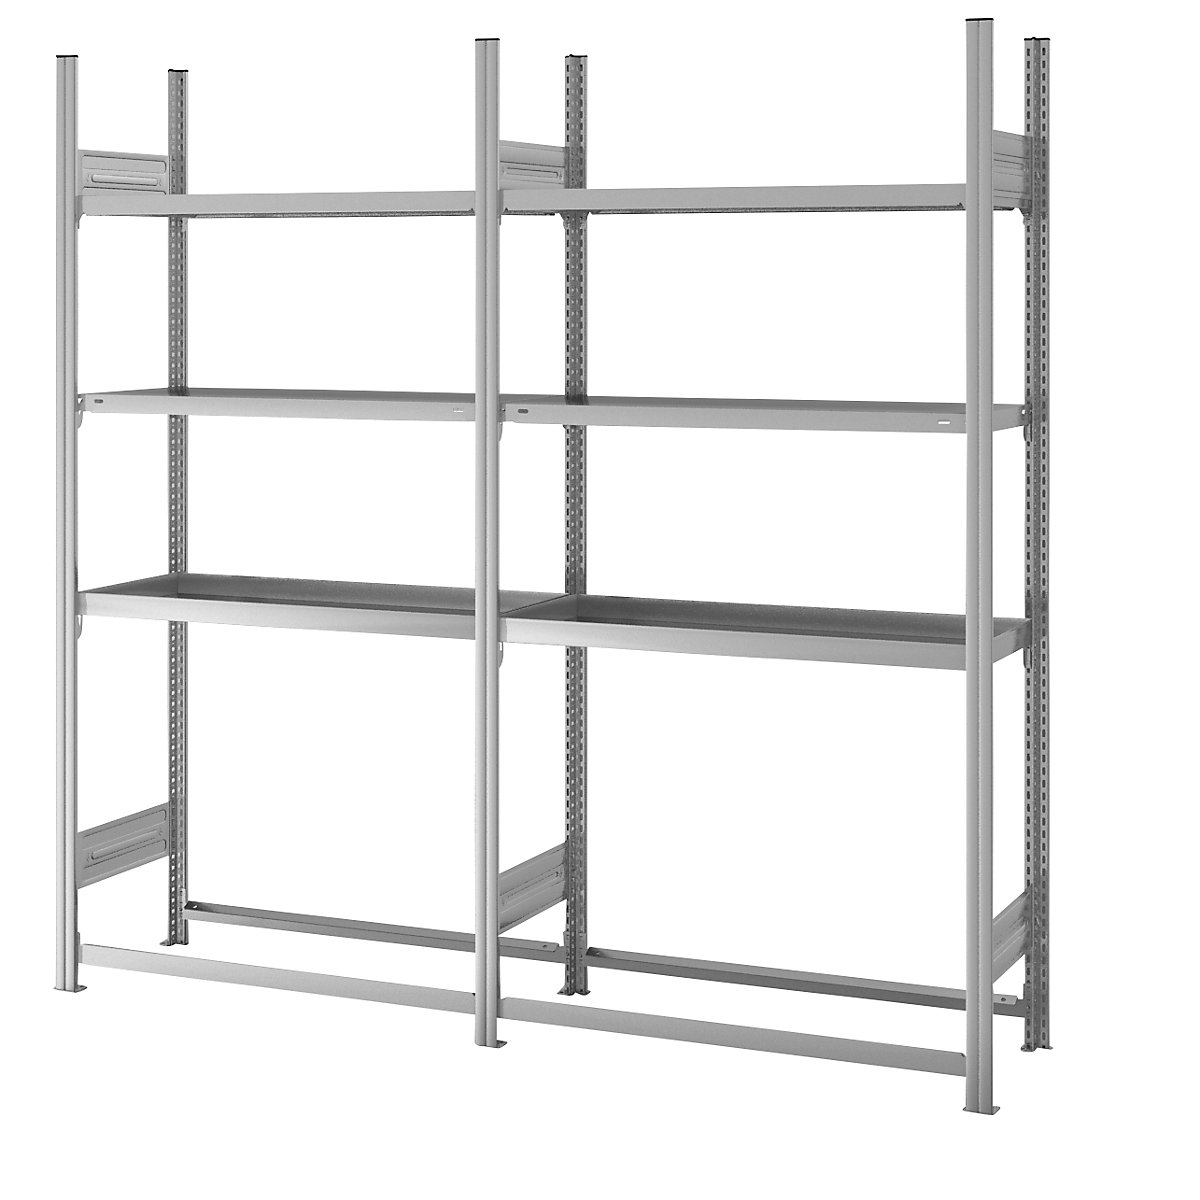 Warehouse and workshop multifunction shelf unit – hofe (Product illustration 3)